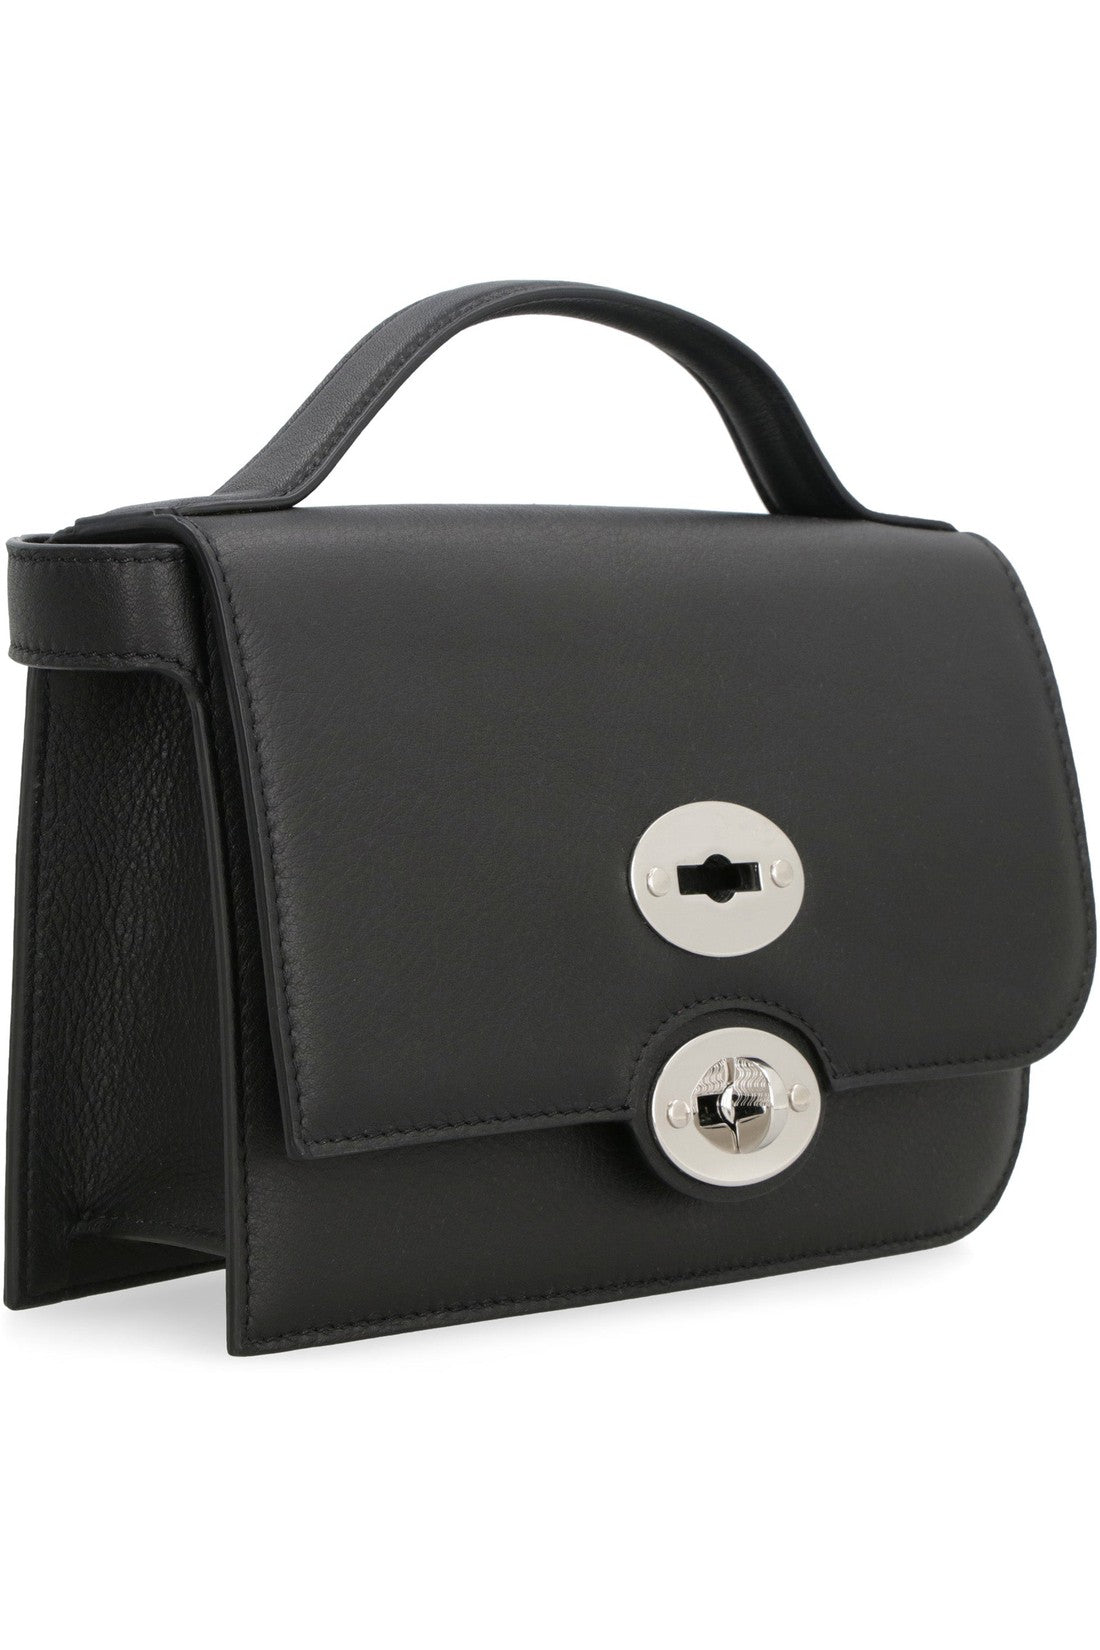 Zanellato-OUTLET-SALE-Ella leather handbag-ARCHIVIST